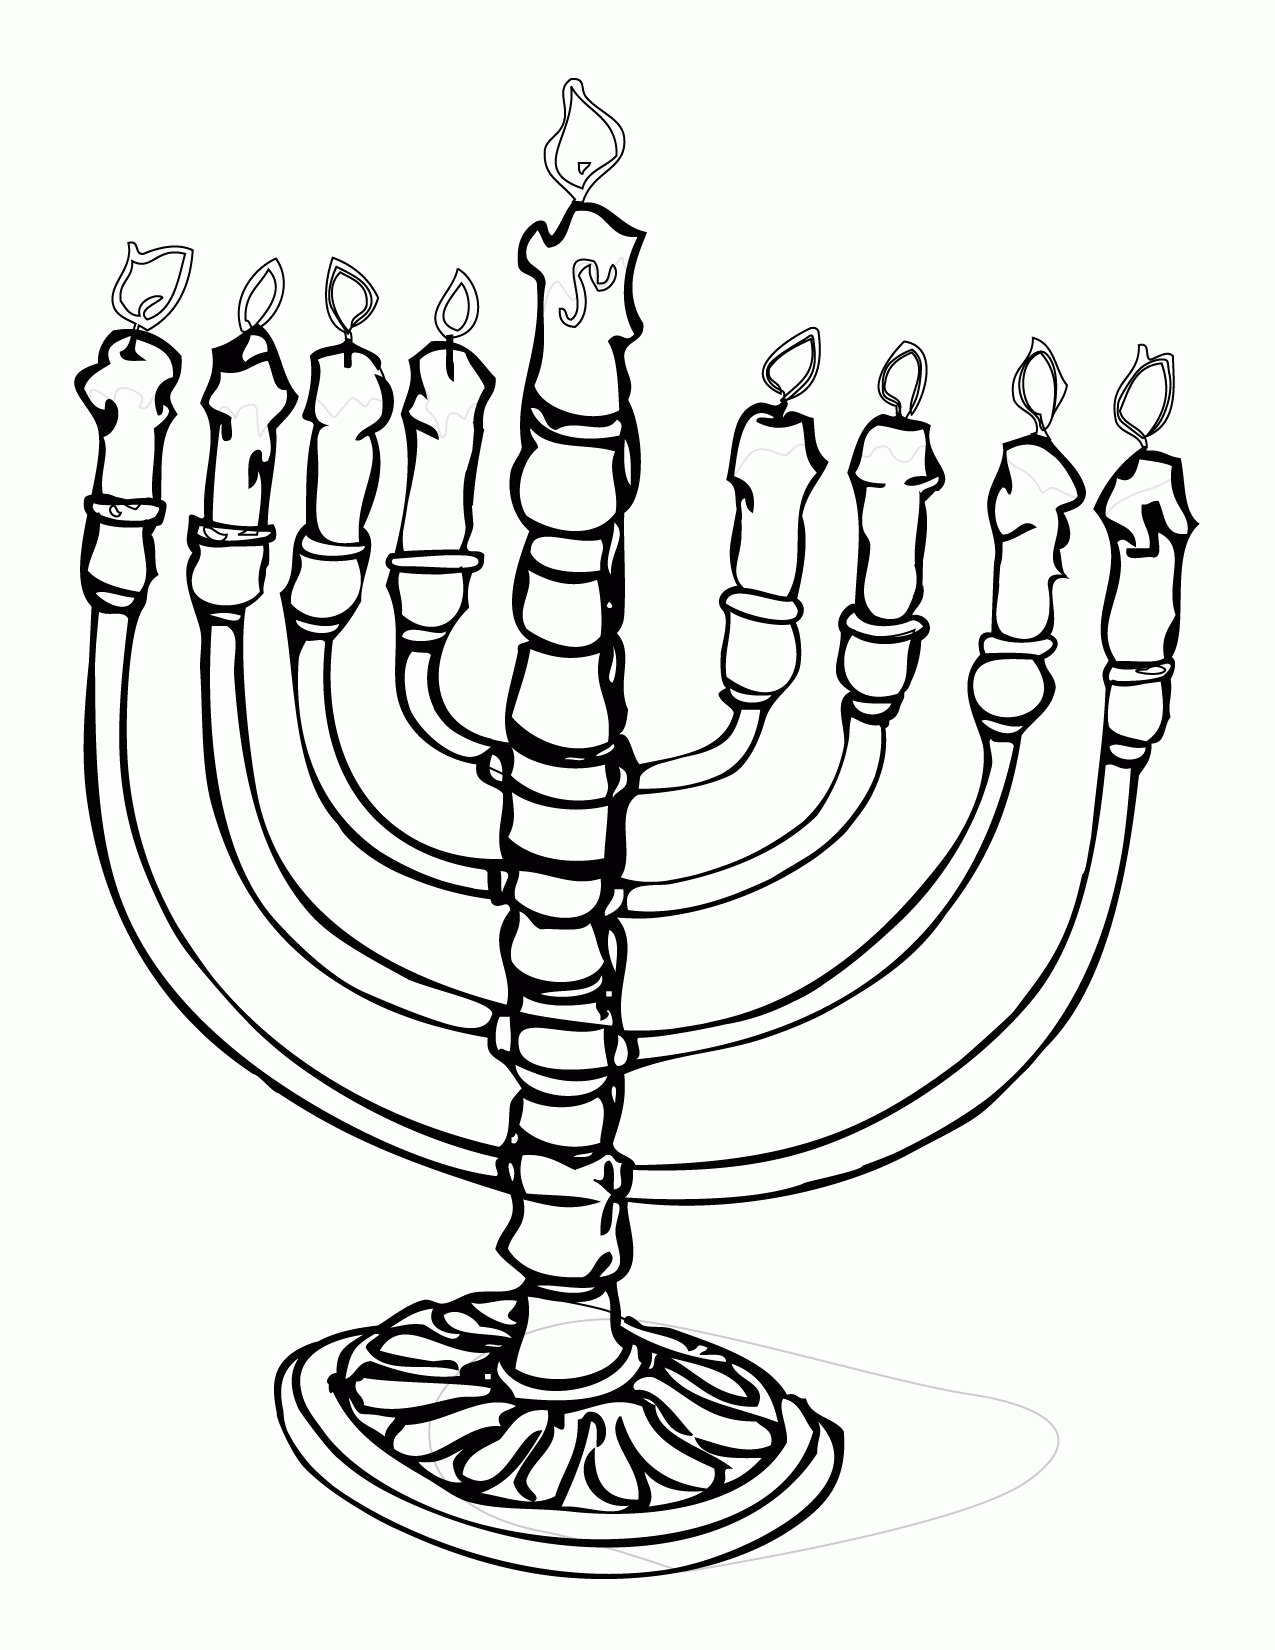 Hanukkah Coloring Page - Handipoints